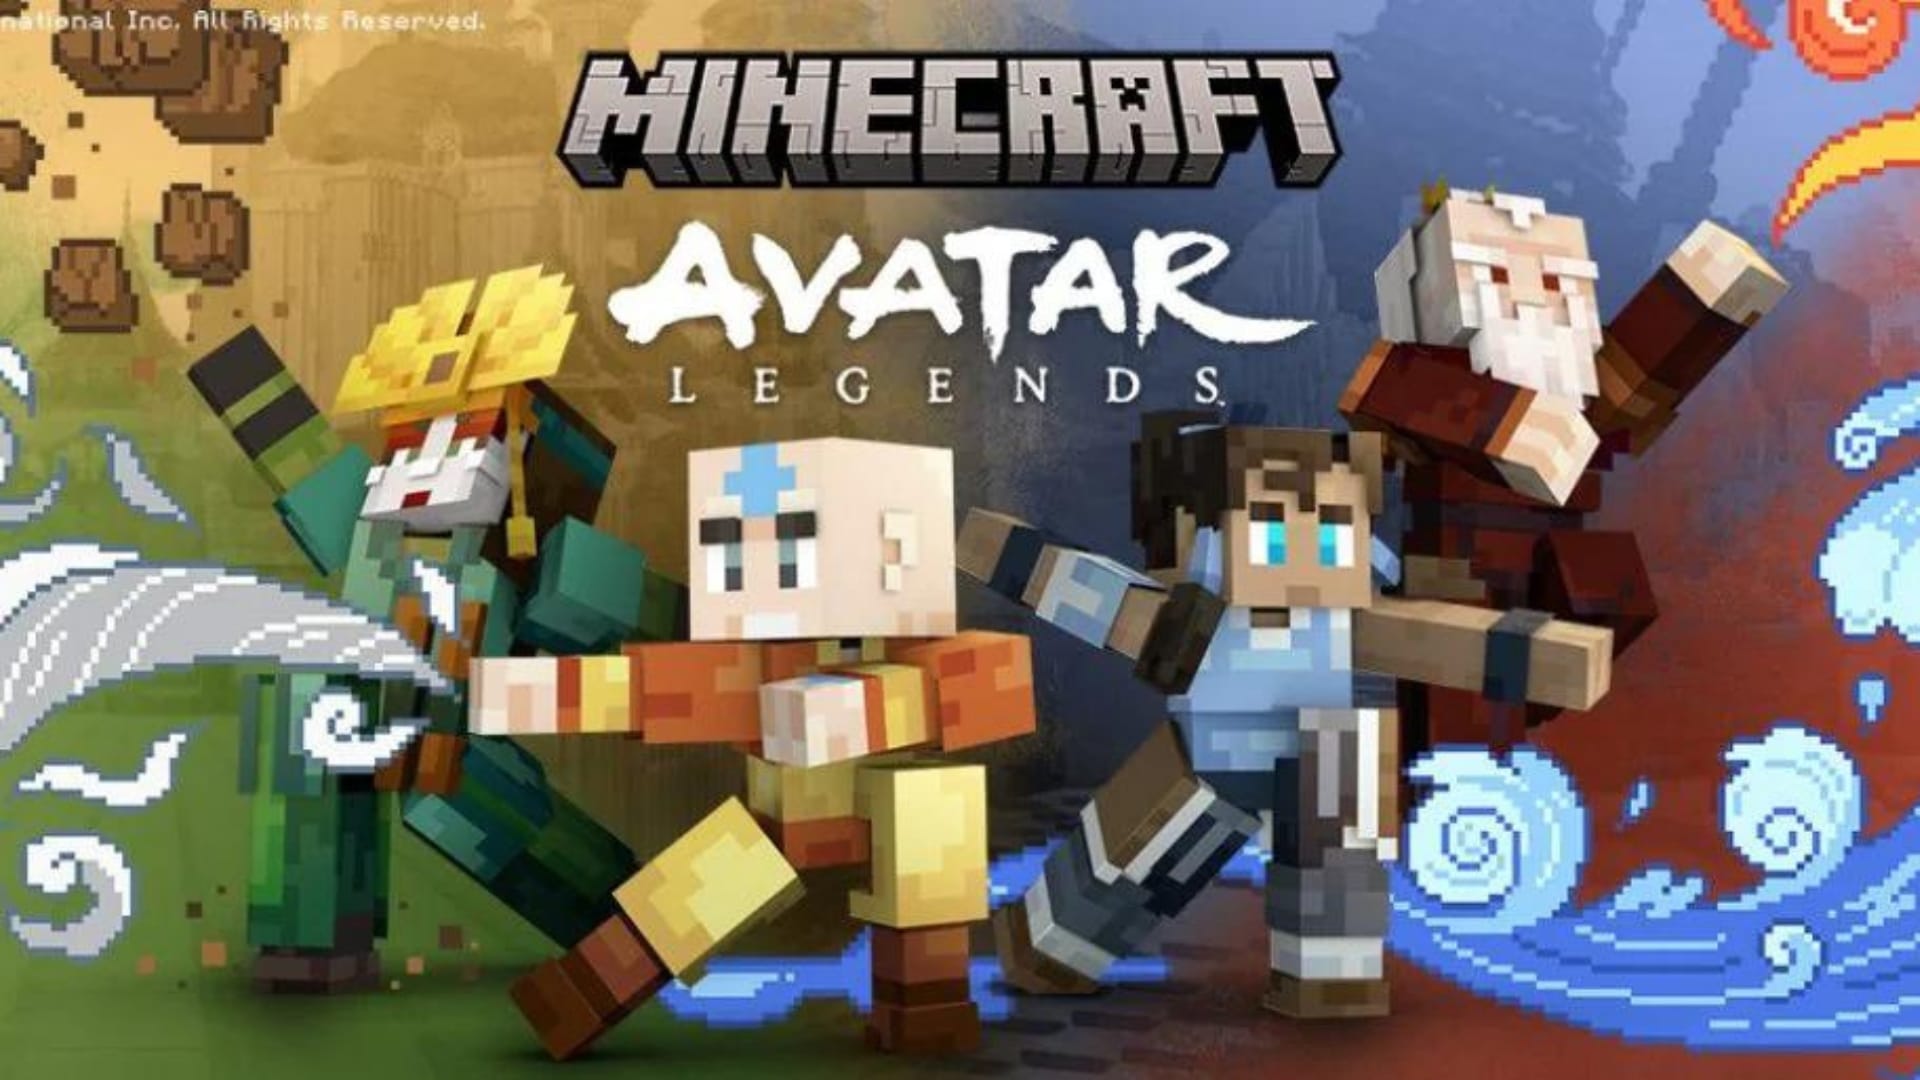 Atualização chegando: Minecraft receberá novas skins padrão até o fim de  novembro 